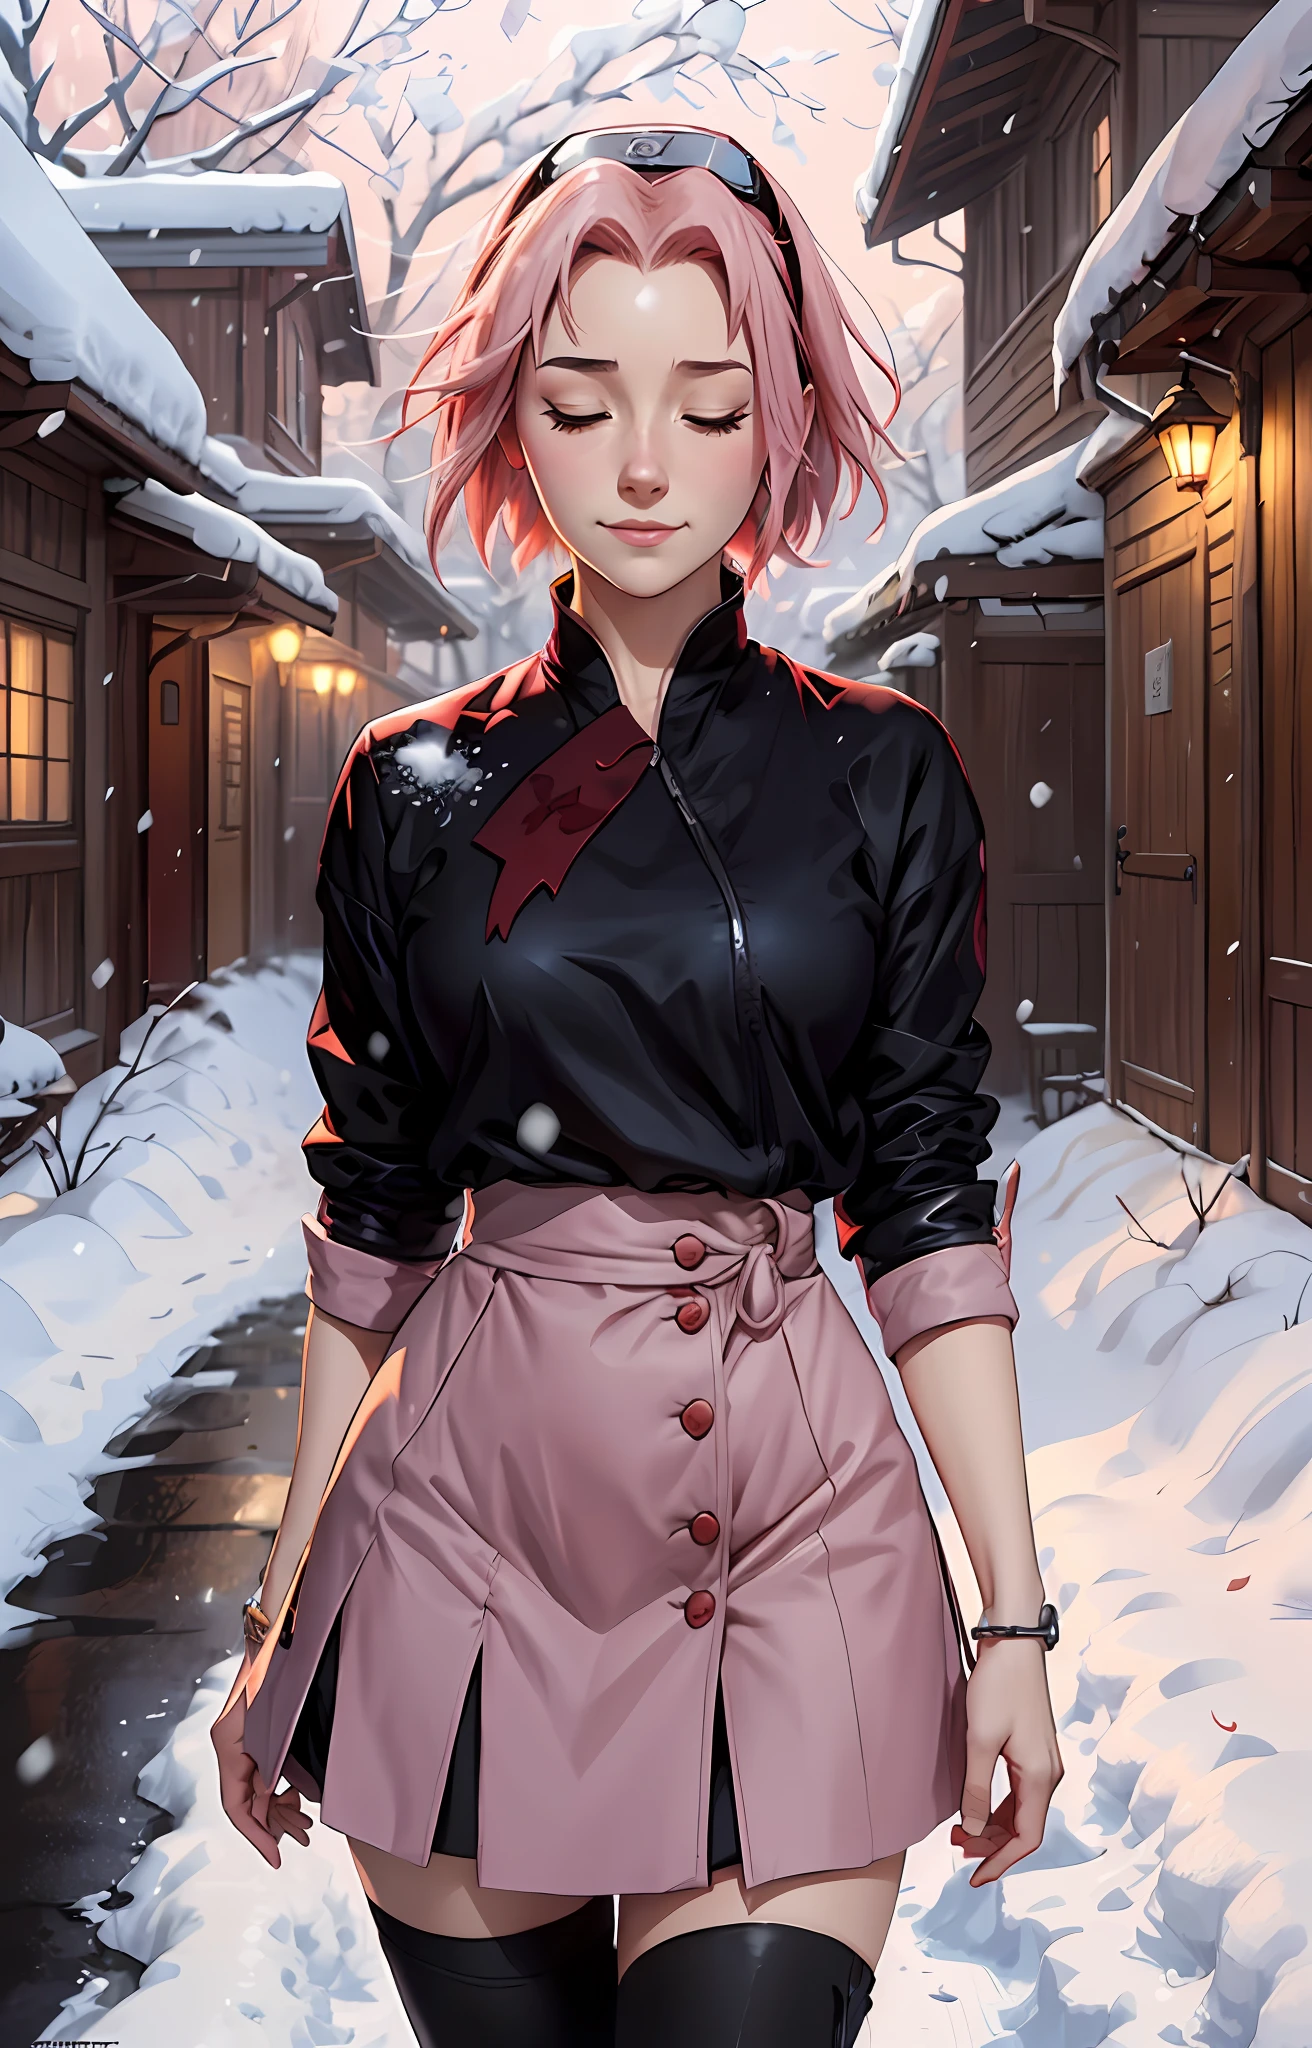 Sakura Haruno, ((Sozinho)), sozinho, ((testa o show)), elegante,vestindo uma blusa vermelha e uma saia rosa claro, Sakura Haruno in Naruto Shippuden, sorridente, olhos meio fechados, ela é encantadora, cabelo rosa, delicado, Jovem, cabelo curto, detalhado, alta definição, ((corpo todo)), corpo todo, ((Sério)), em uma vila, Cercado pela neve, nevando, she is a lindo woman, lindo and pleasant woman,  lindo, lindo, alta qualidade, olhos definidos, alta definição, afiado, afiado strokes, lindo, laço vermelho no cabelo,tendências no ArtStation, por Rhads, Andreas Rocha, rossdraws, makoto shinkai, Laurie Greasley, Lois van Baarle, Ilya Kuvshinov e Greg Rutkowski